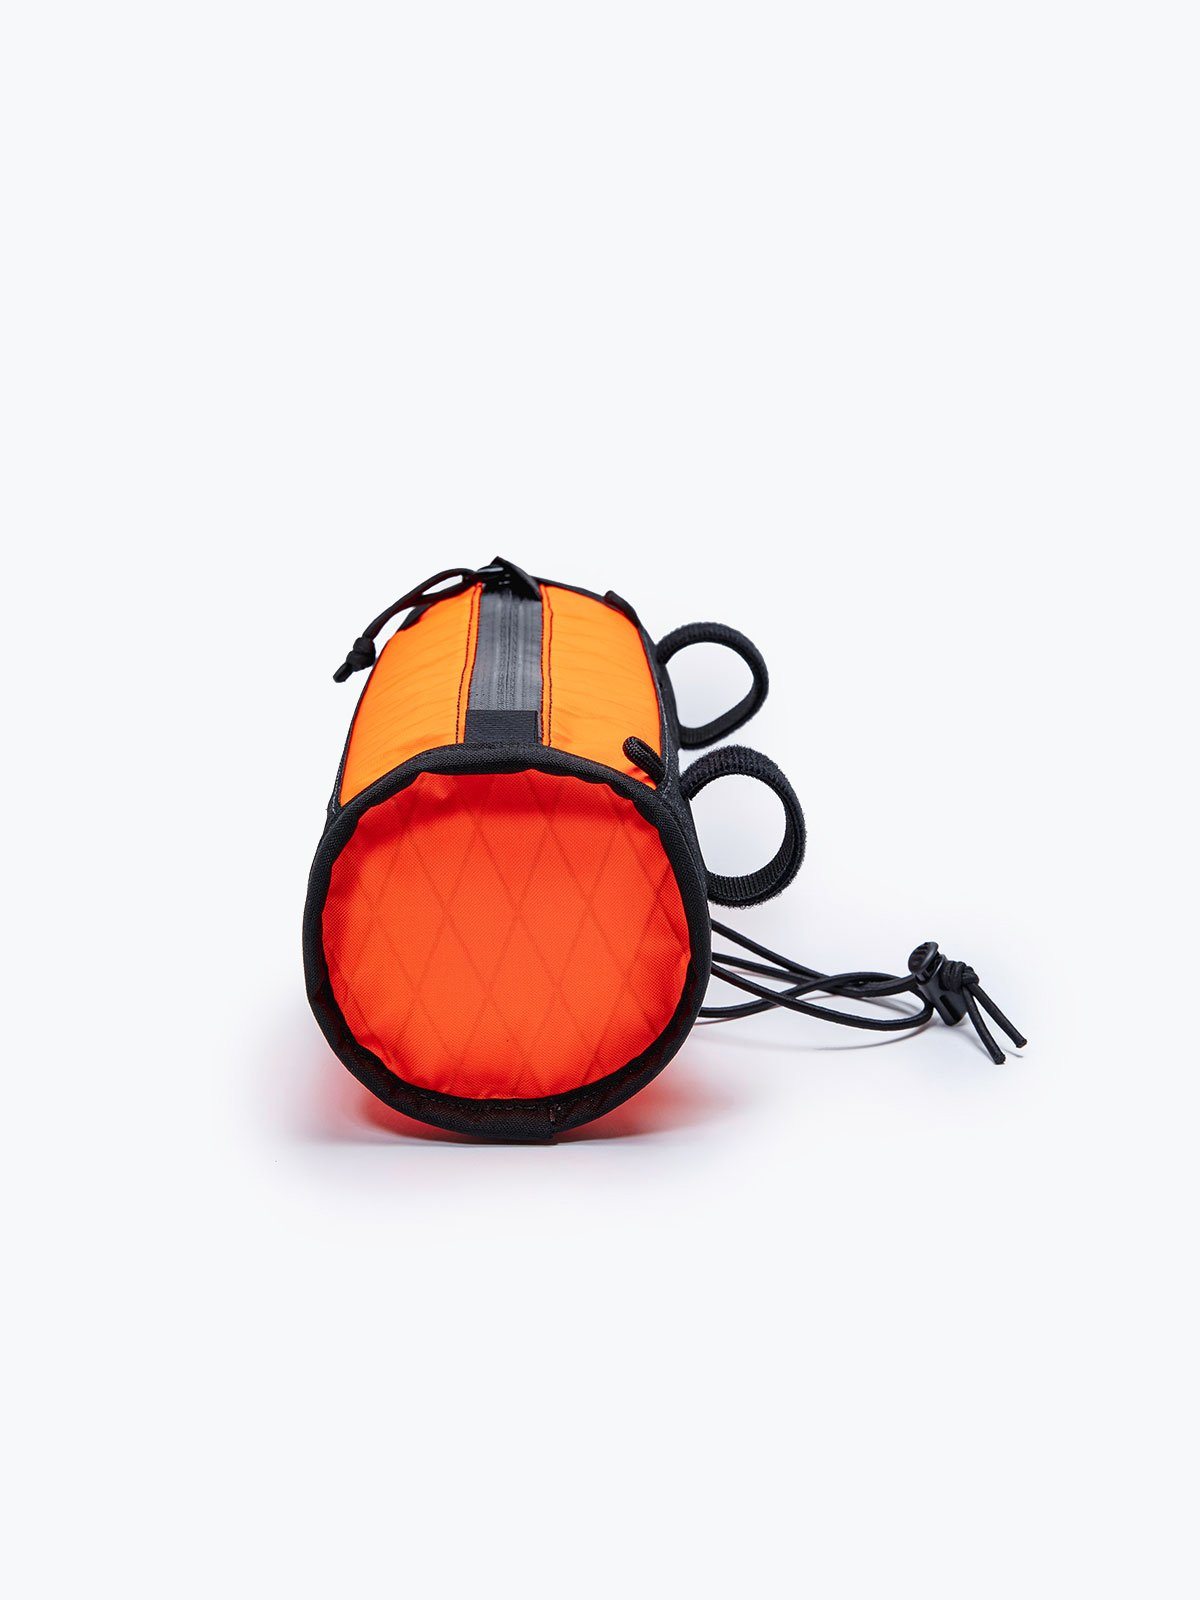 Toro Handlebar Bag by Mission Workshop - Bolsas resistentes a la intemperie y ropa técnica - San Francisco y Los Angeles - Construidas para durar - Garantizadas para siempre